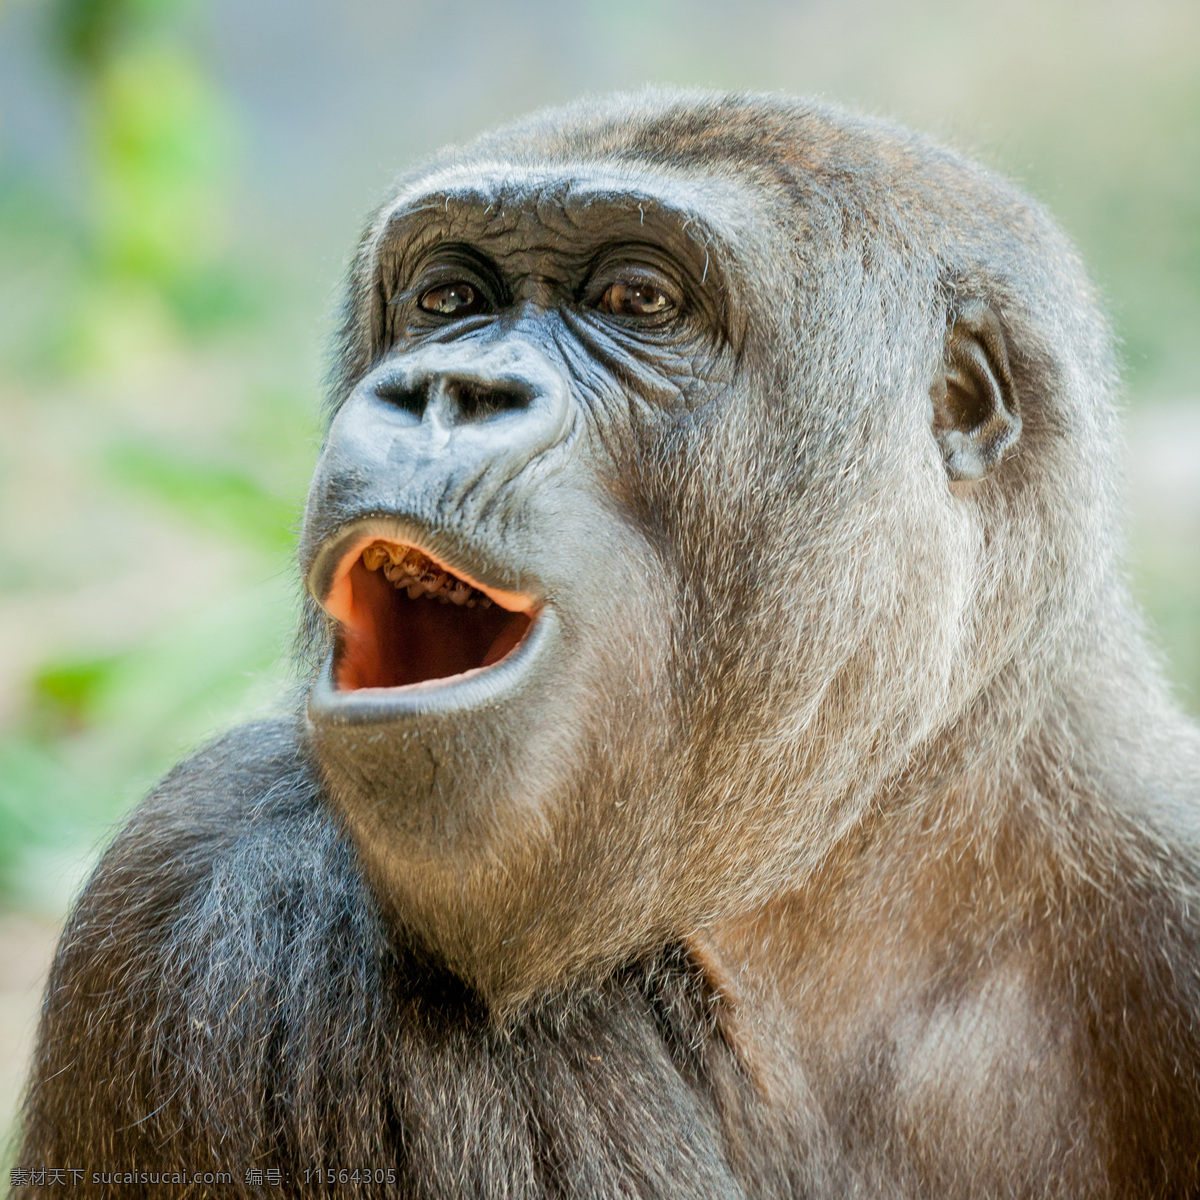 兴奋的猩猩 兴奋 猩猩 大猩猩 野生动物 动物世界 动物摄影 陆地动物 生物世界 灰色